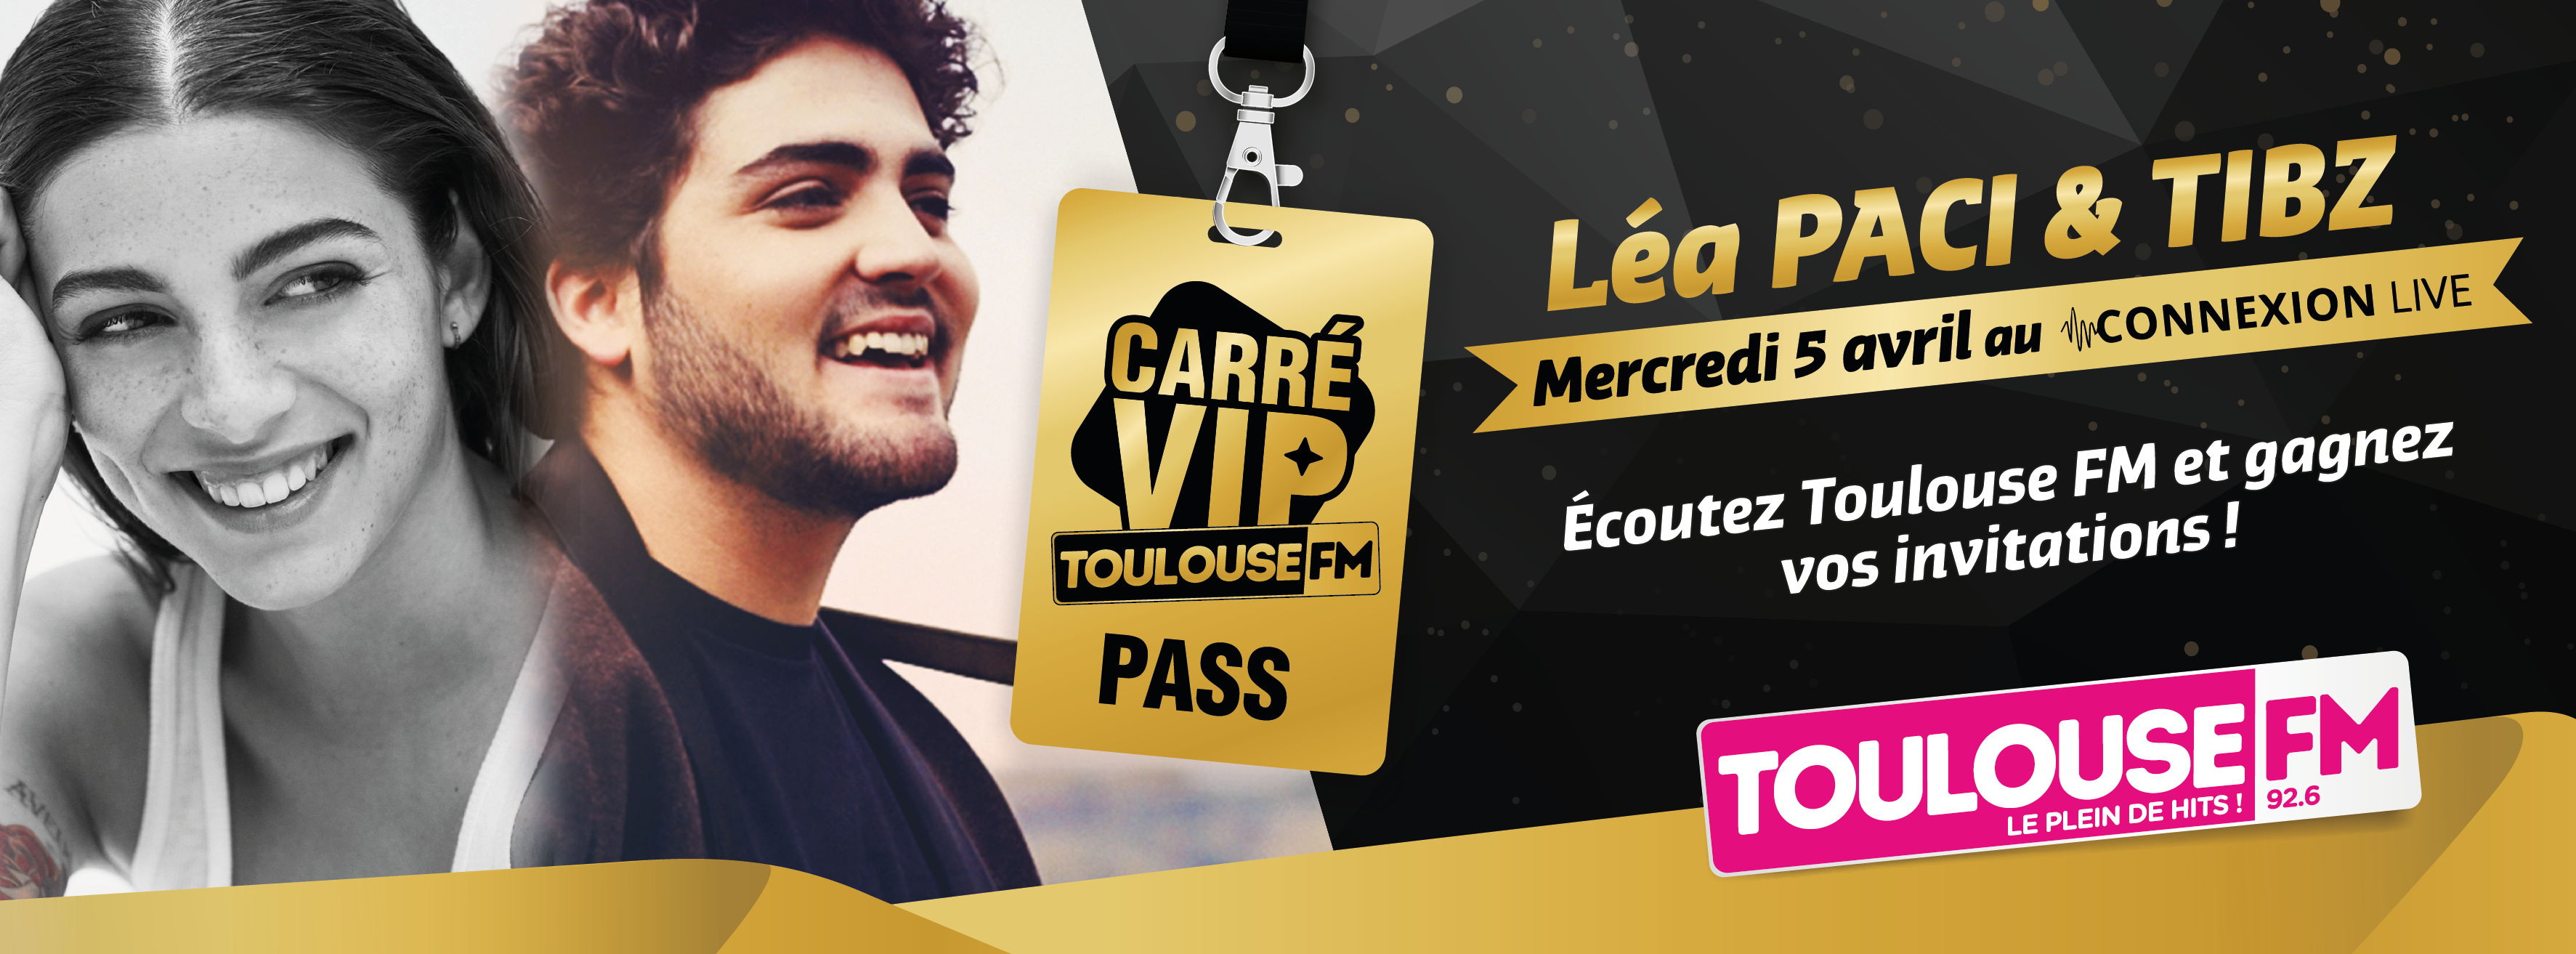 Toulouse FM invite Léa Paci et Tibz pour un Carré VIP